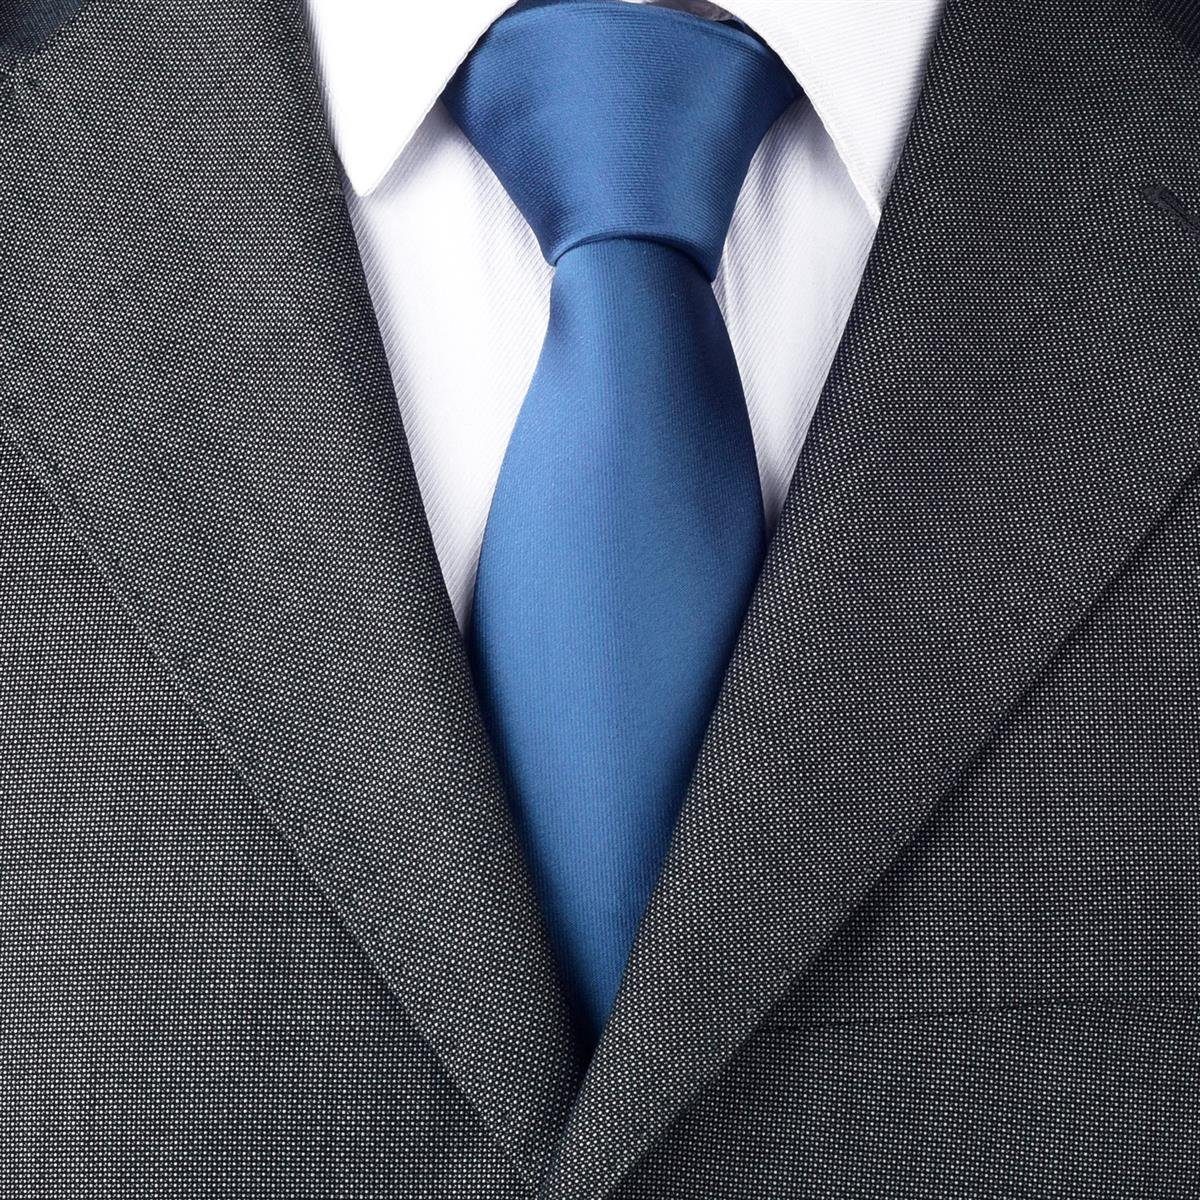 DonDon Krawatte 7 cm für Herren klassische Krawatte für Büro oder festliche Veranstaltungen